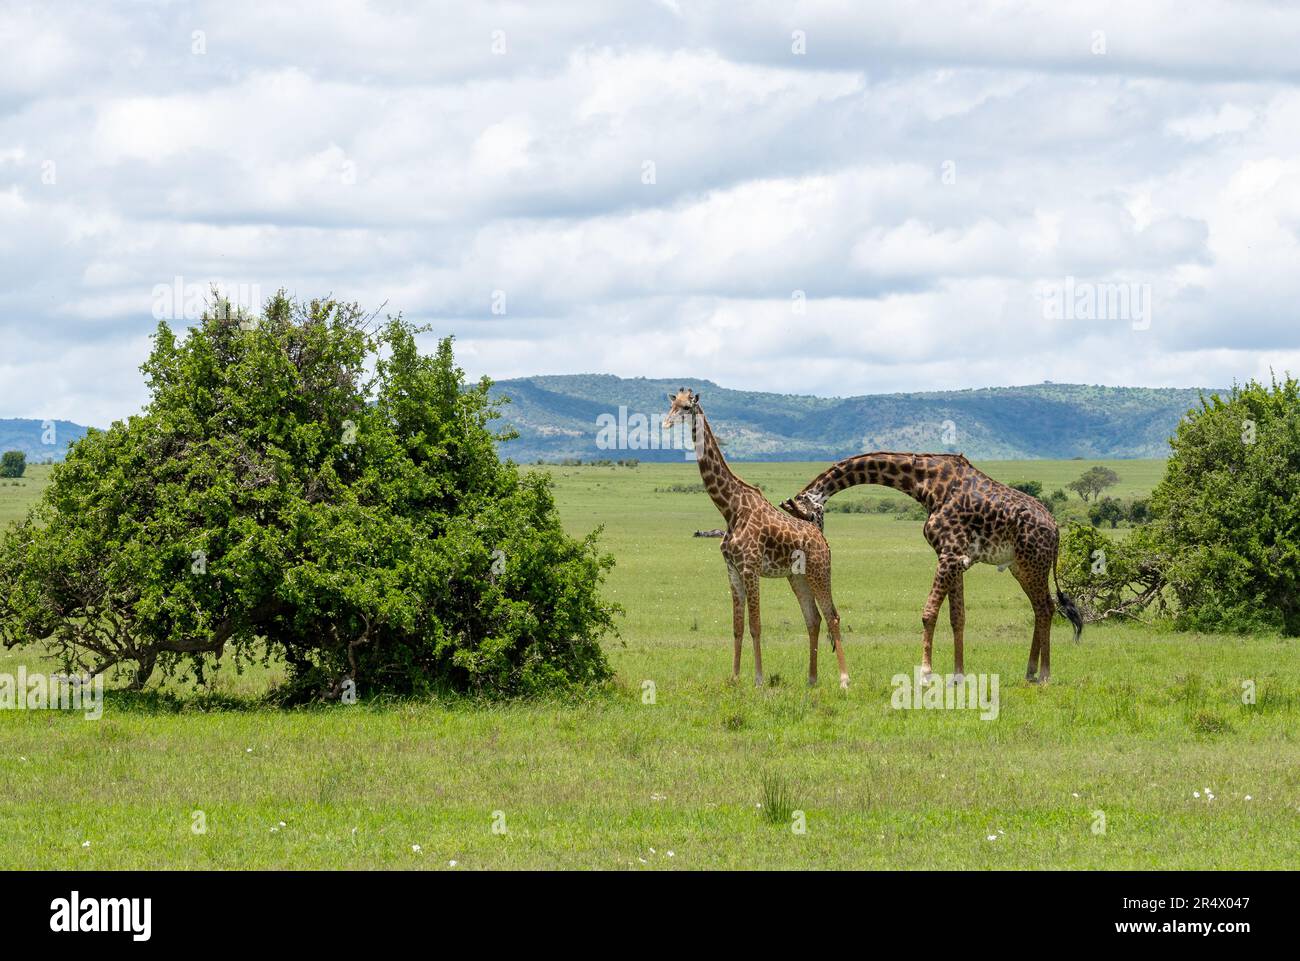 Un mâle Giraffe (Giraffa camelopardalis) à la poursuite d'une femelle. Parc national de Maasai Mara, Kenya, Afrique. Banque D'Images